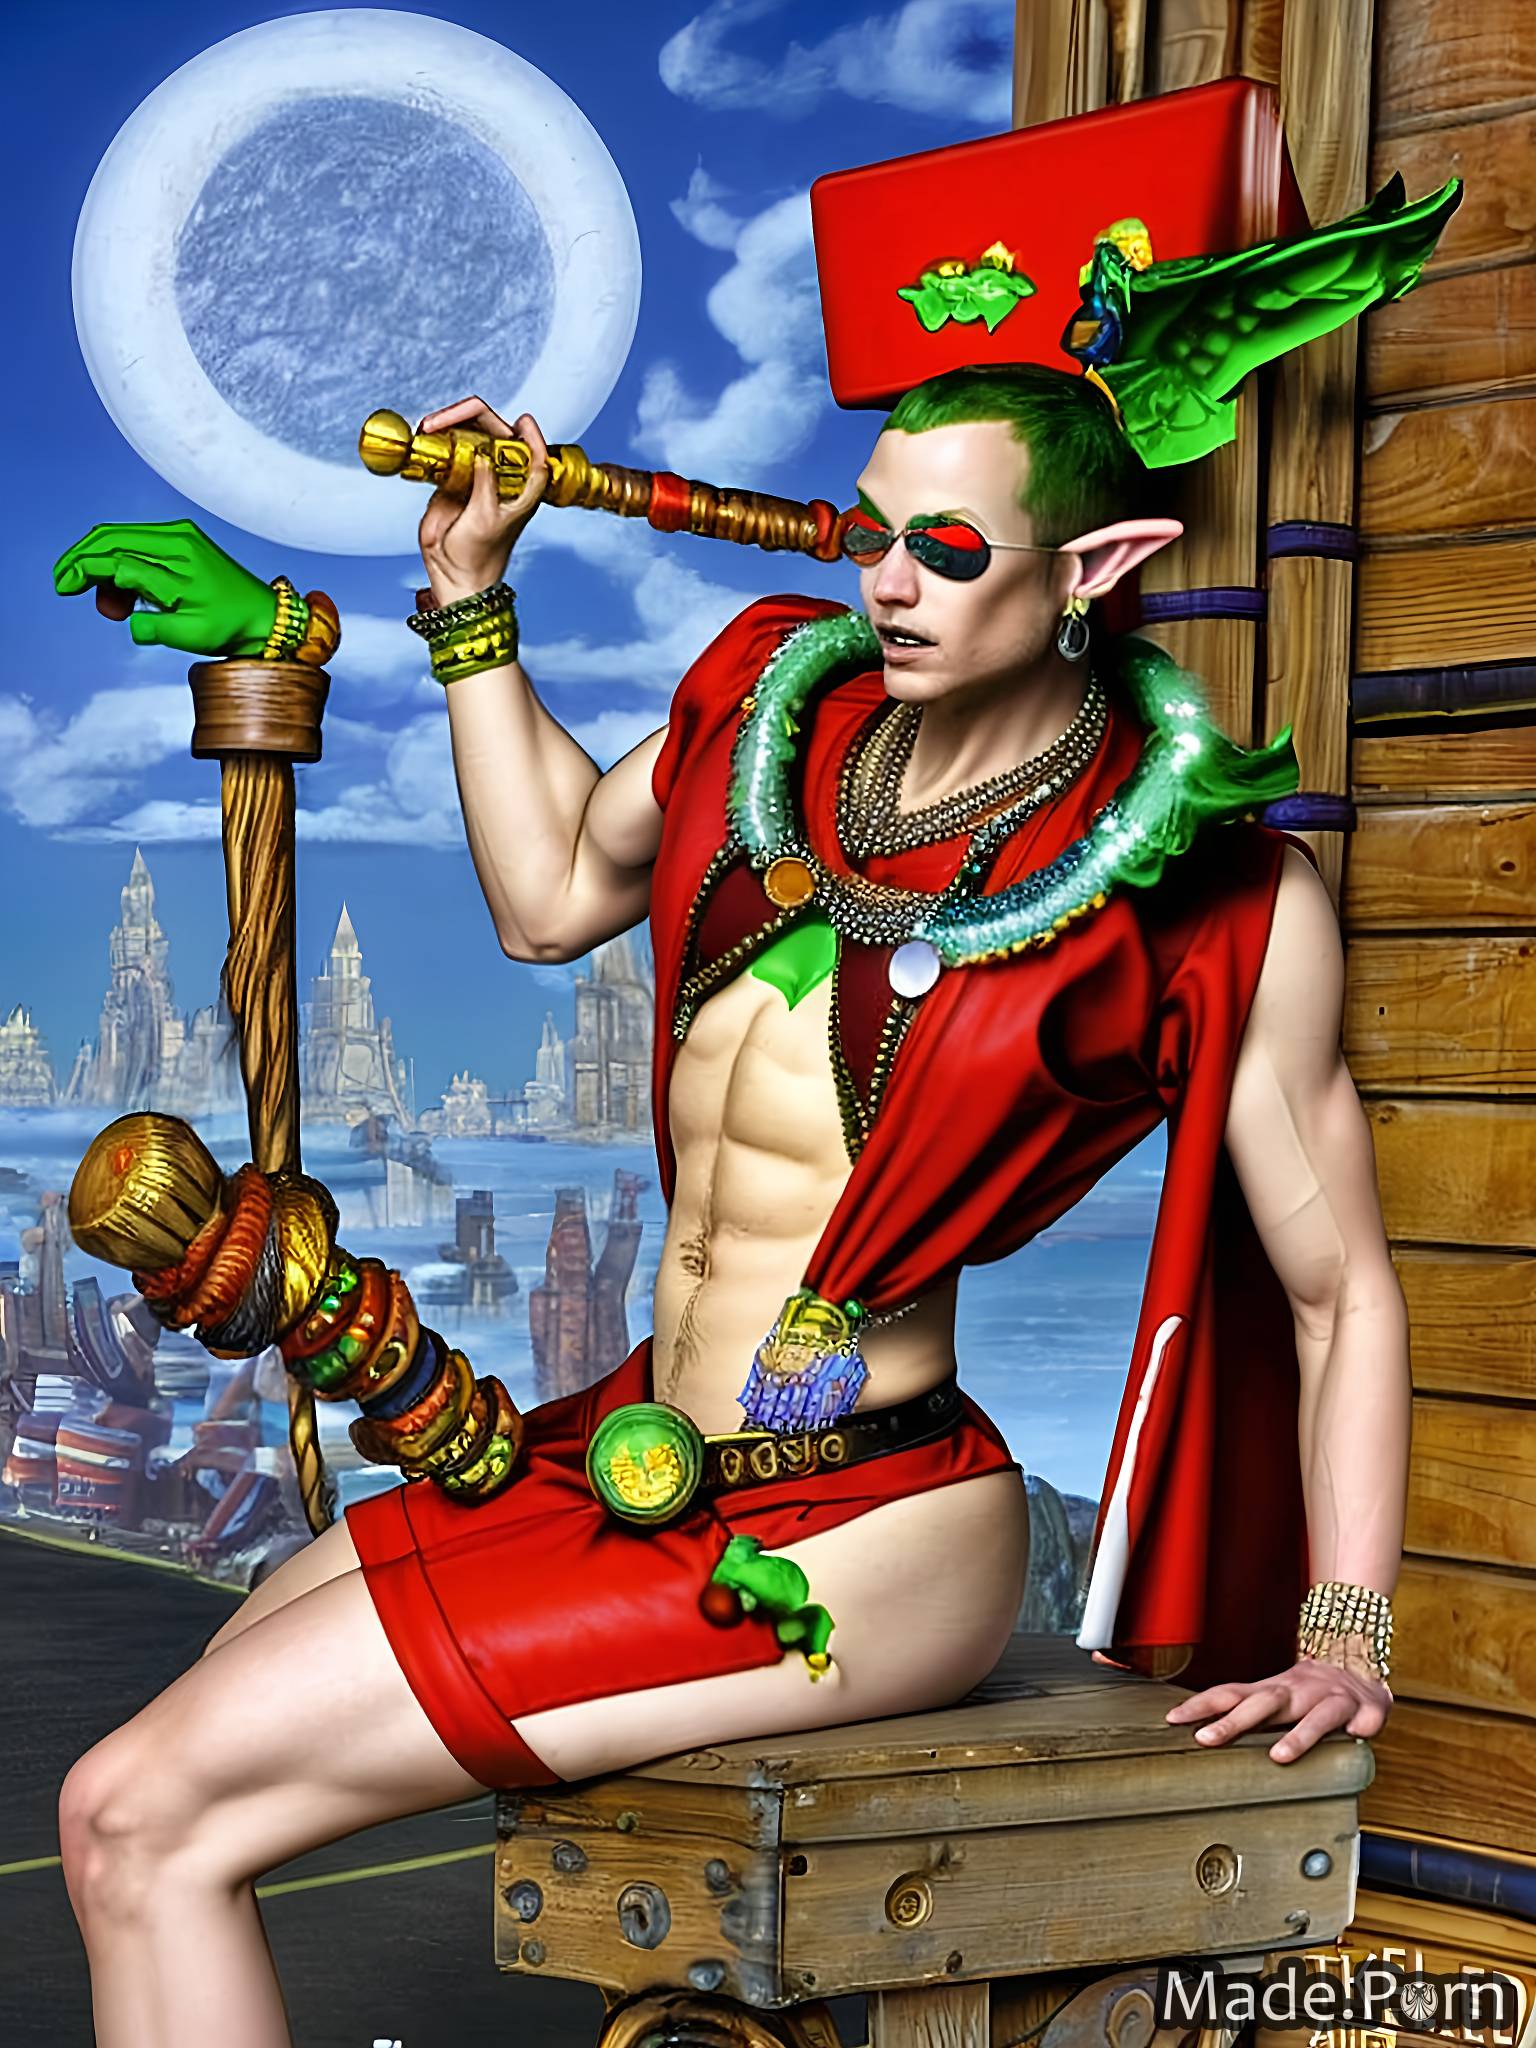 cyborg mariachi mermaid wife belly dancer elf secretary